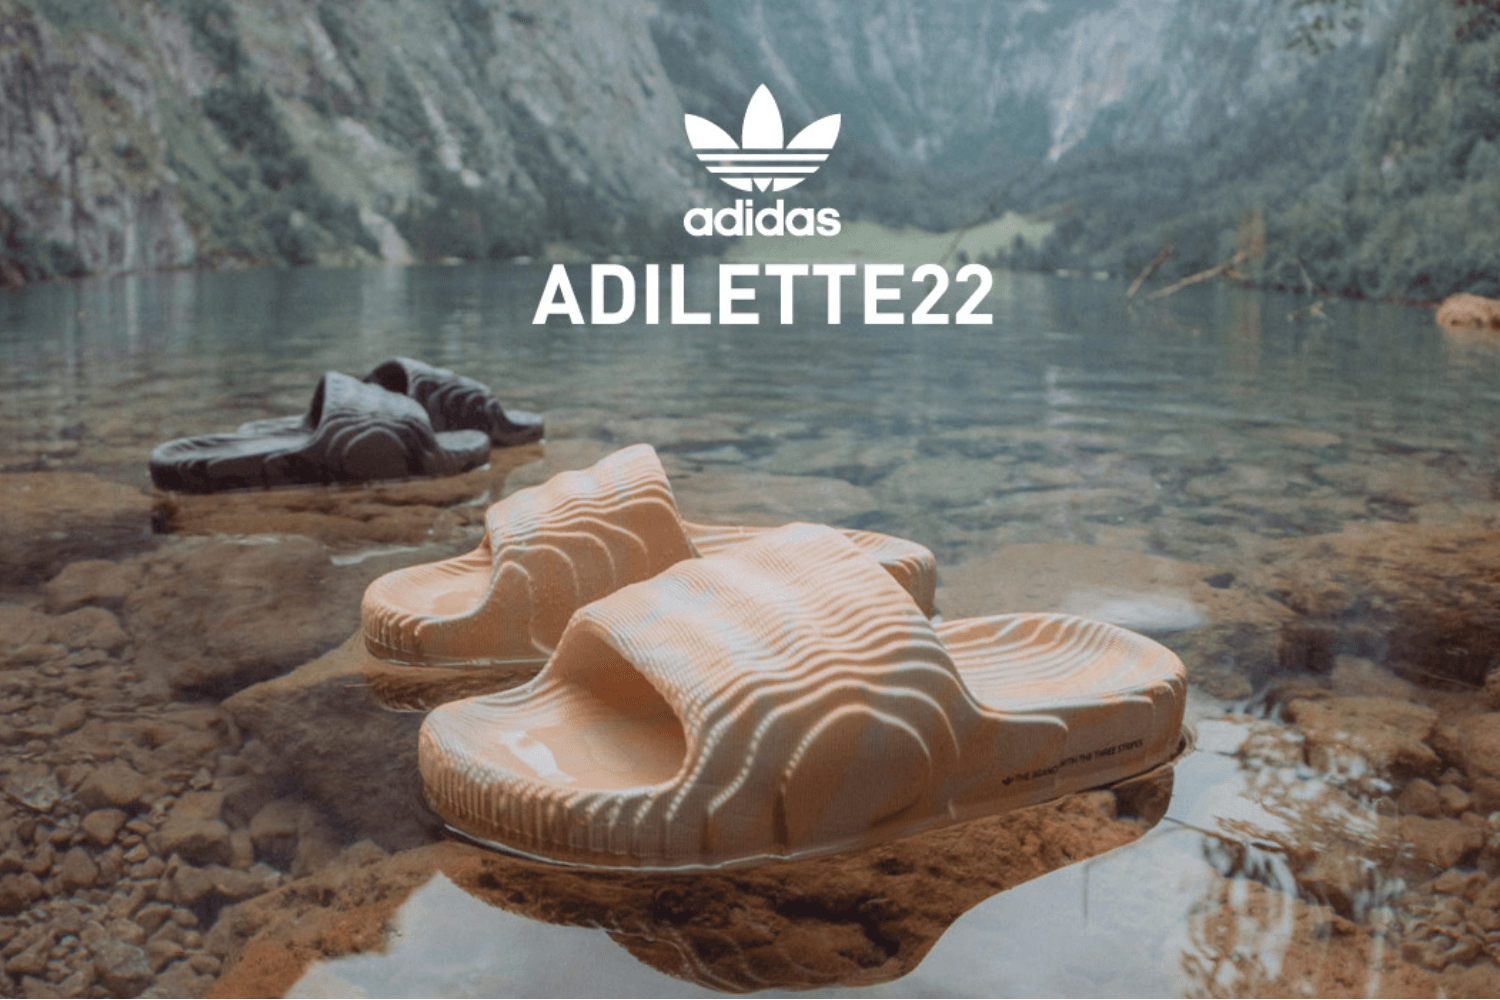 Deze adidas Adilette 22 zijn exclusief verkrijgbaar bij Snipes